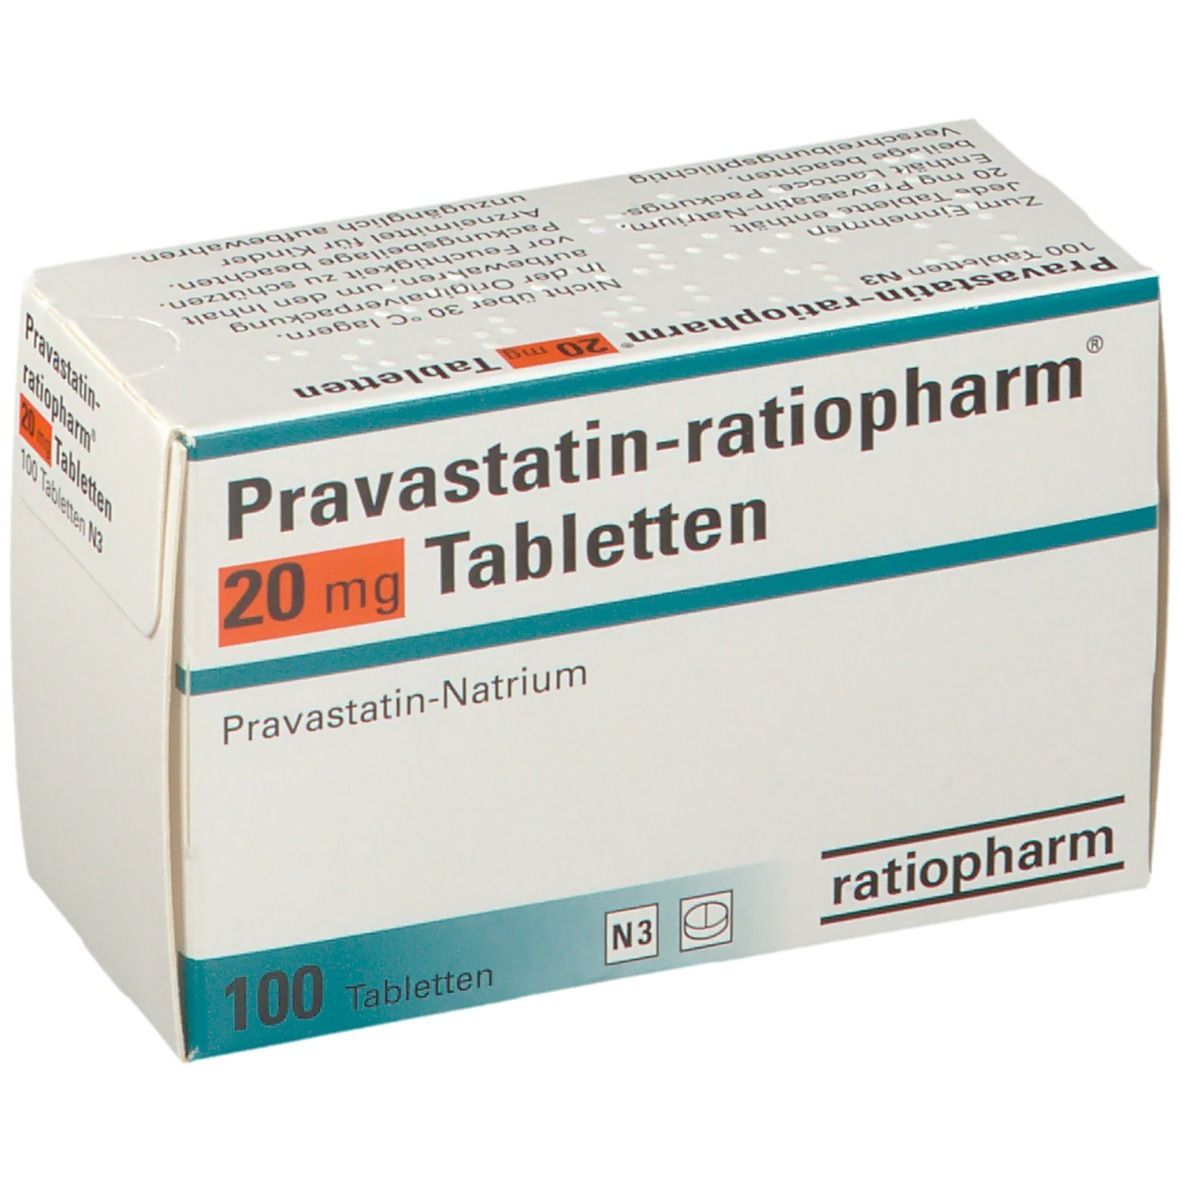 Pravastatin-ratiopharm® 20 mg